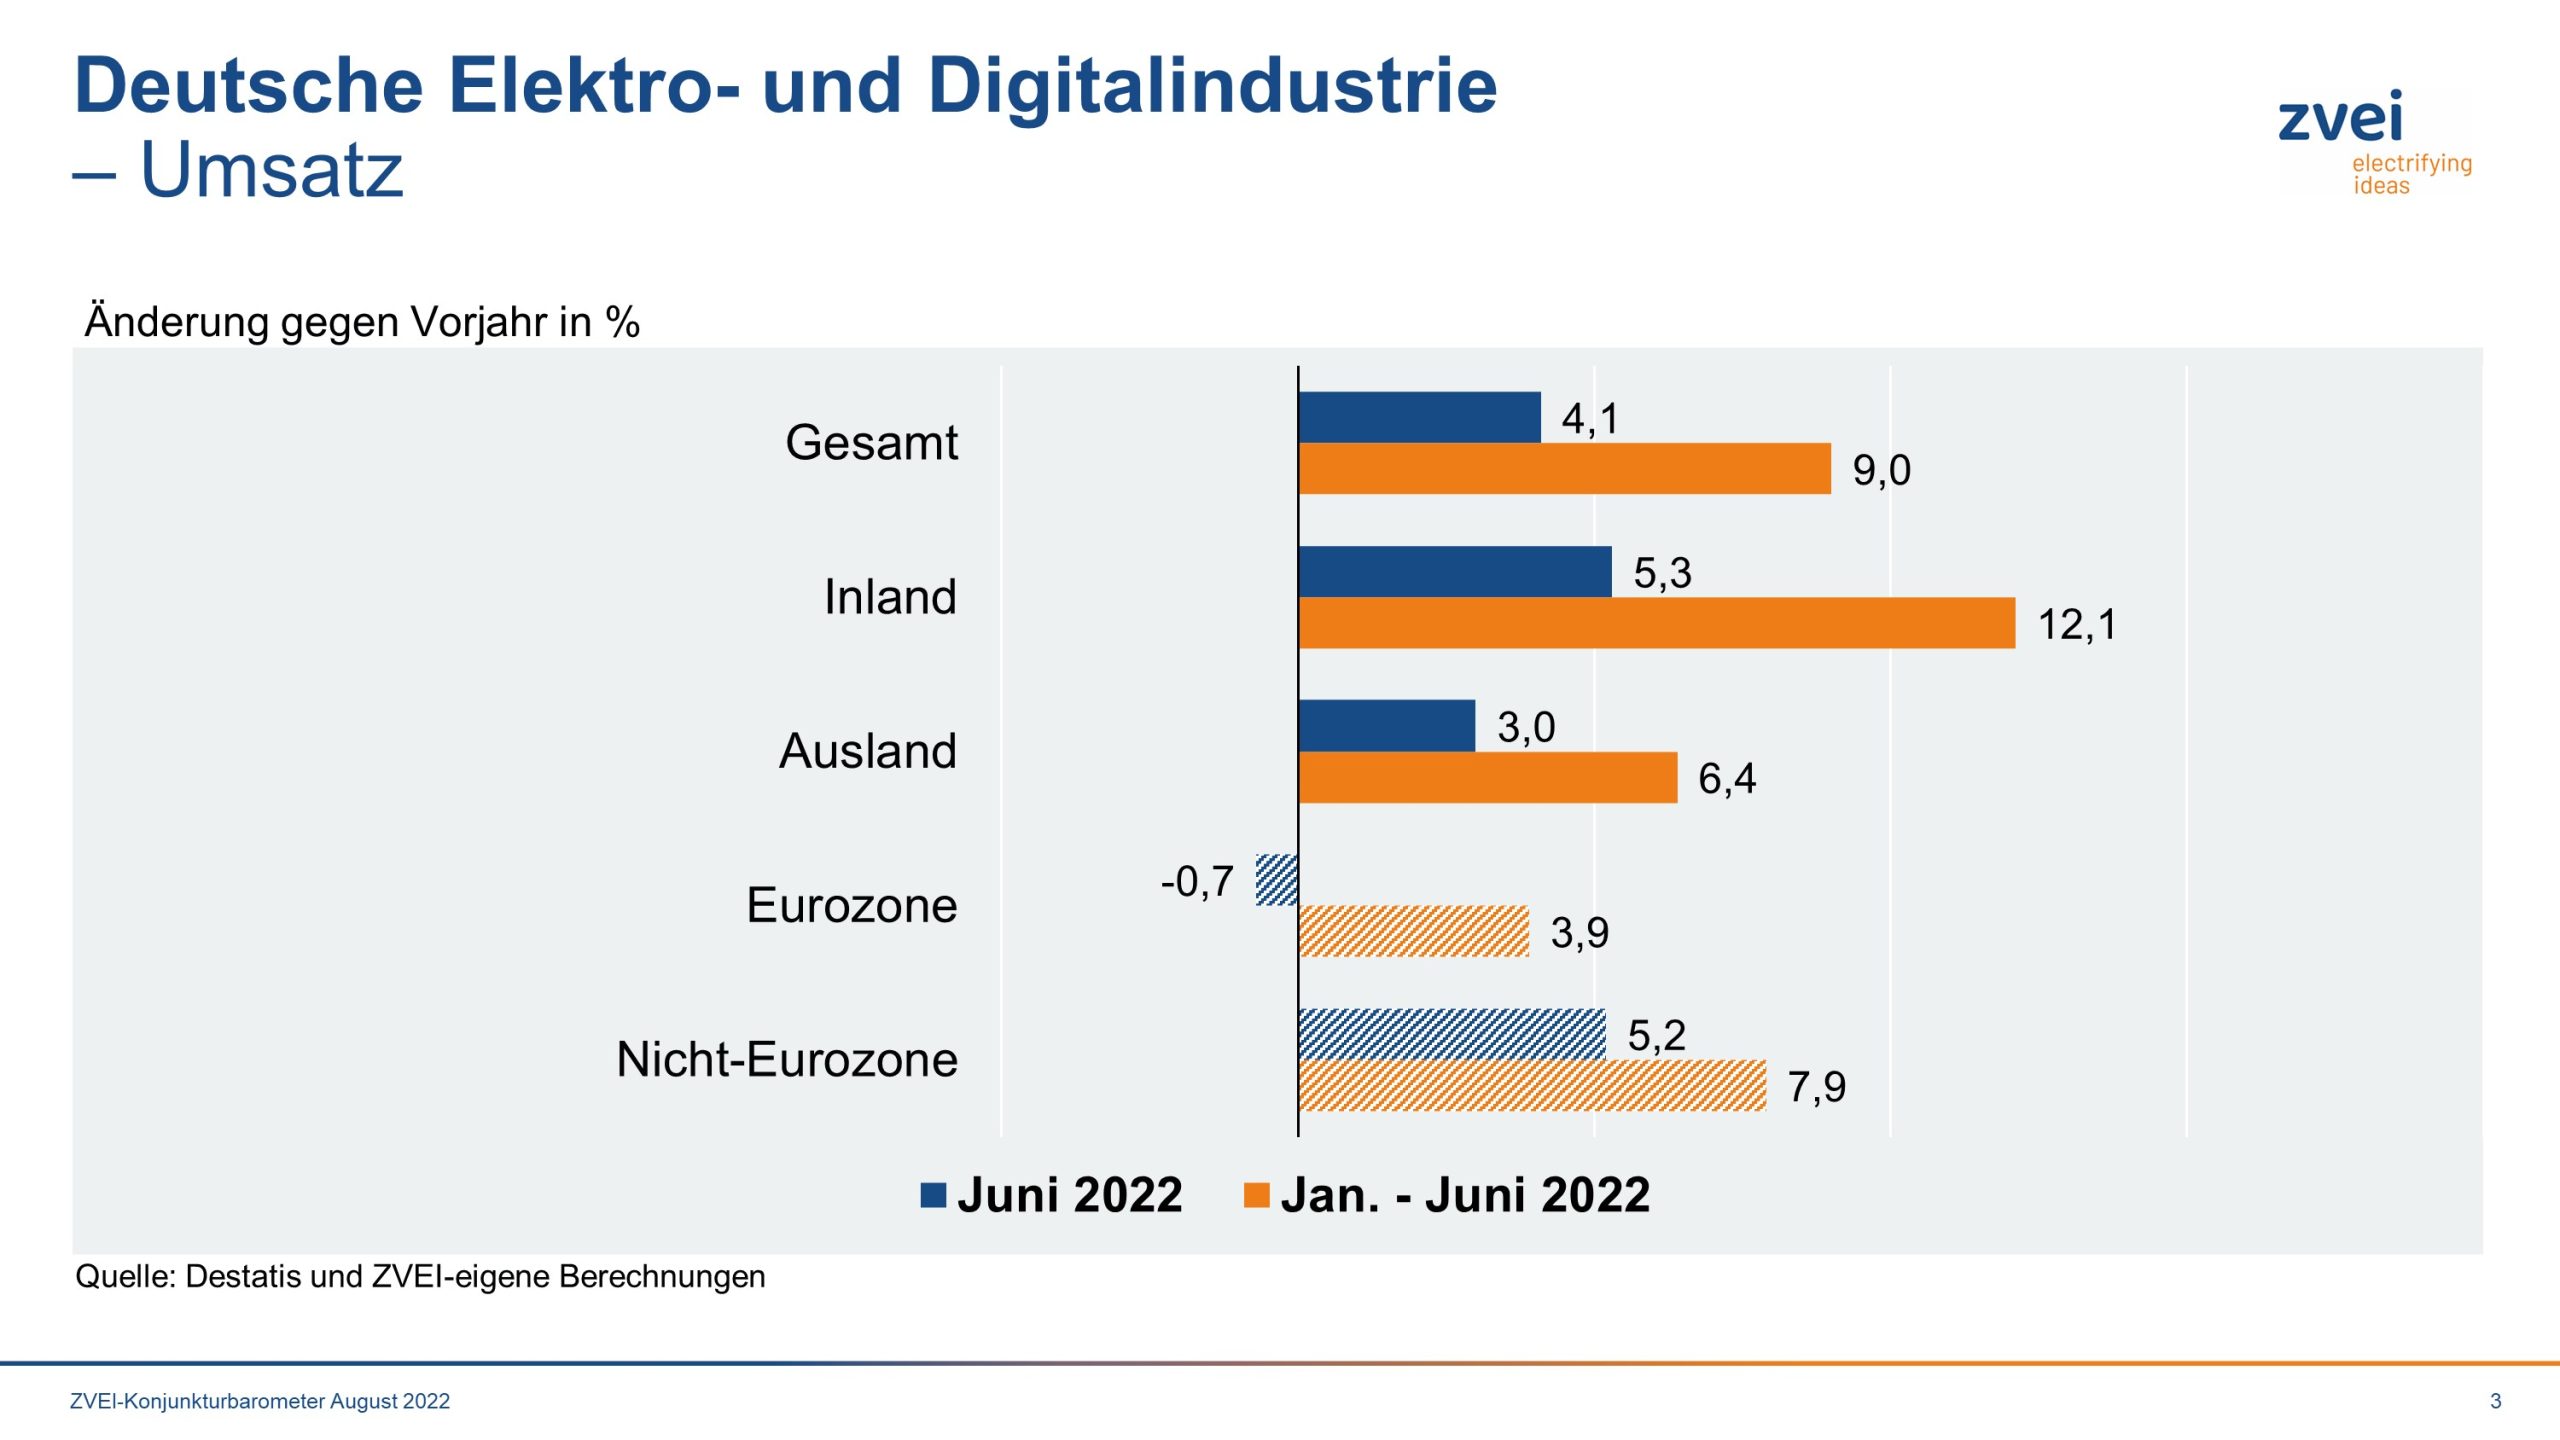 Umsatz in der deutschen Elektroindustrie im Juni 2022